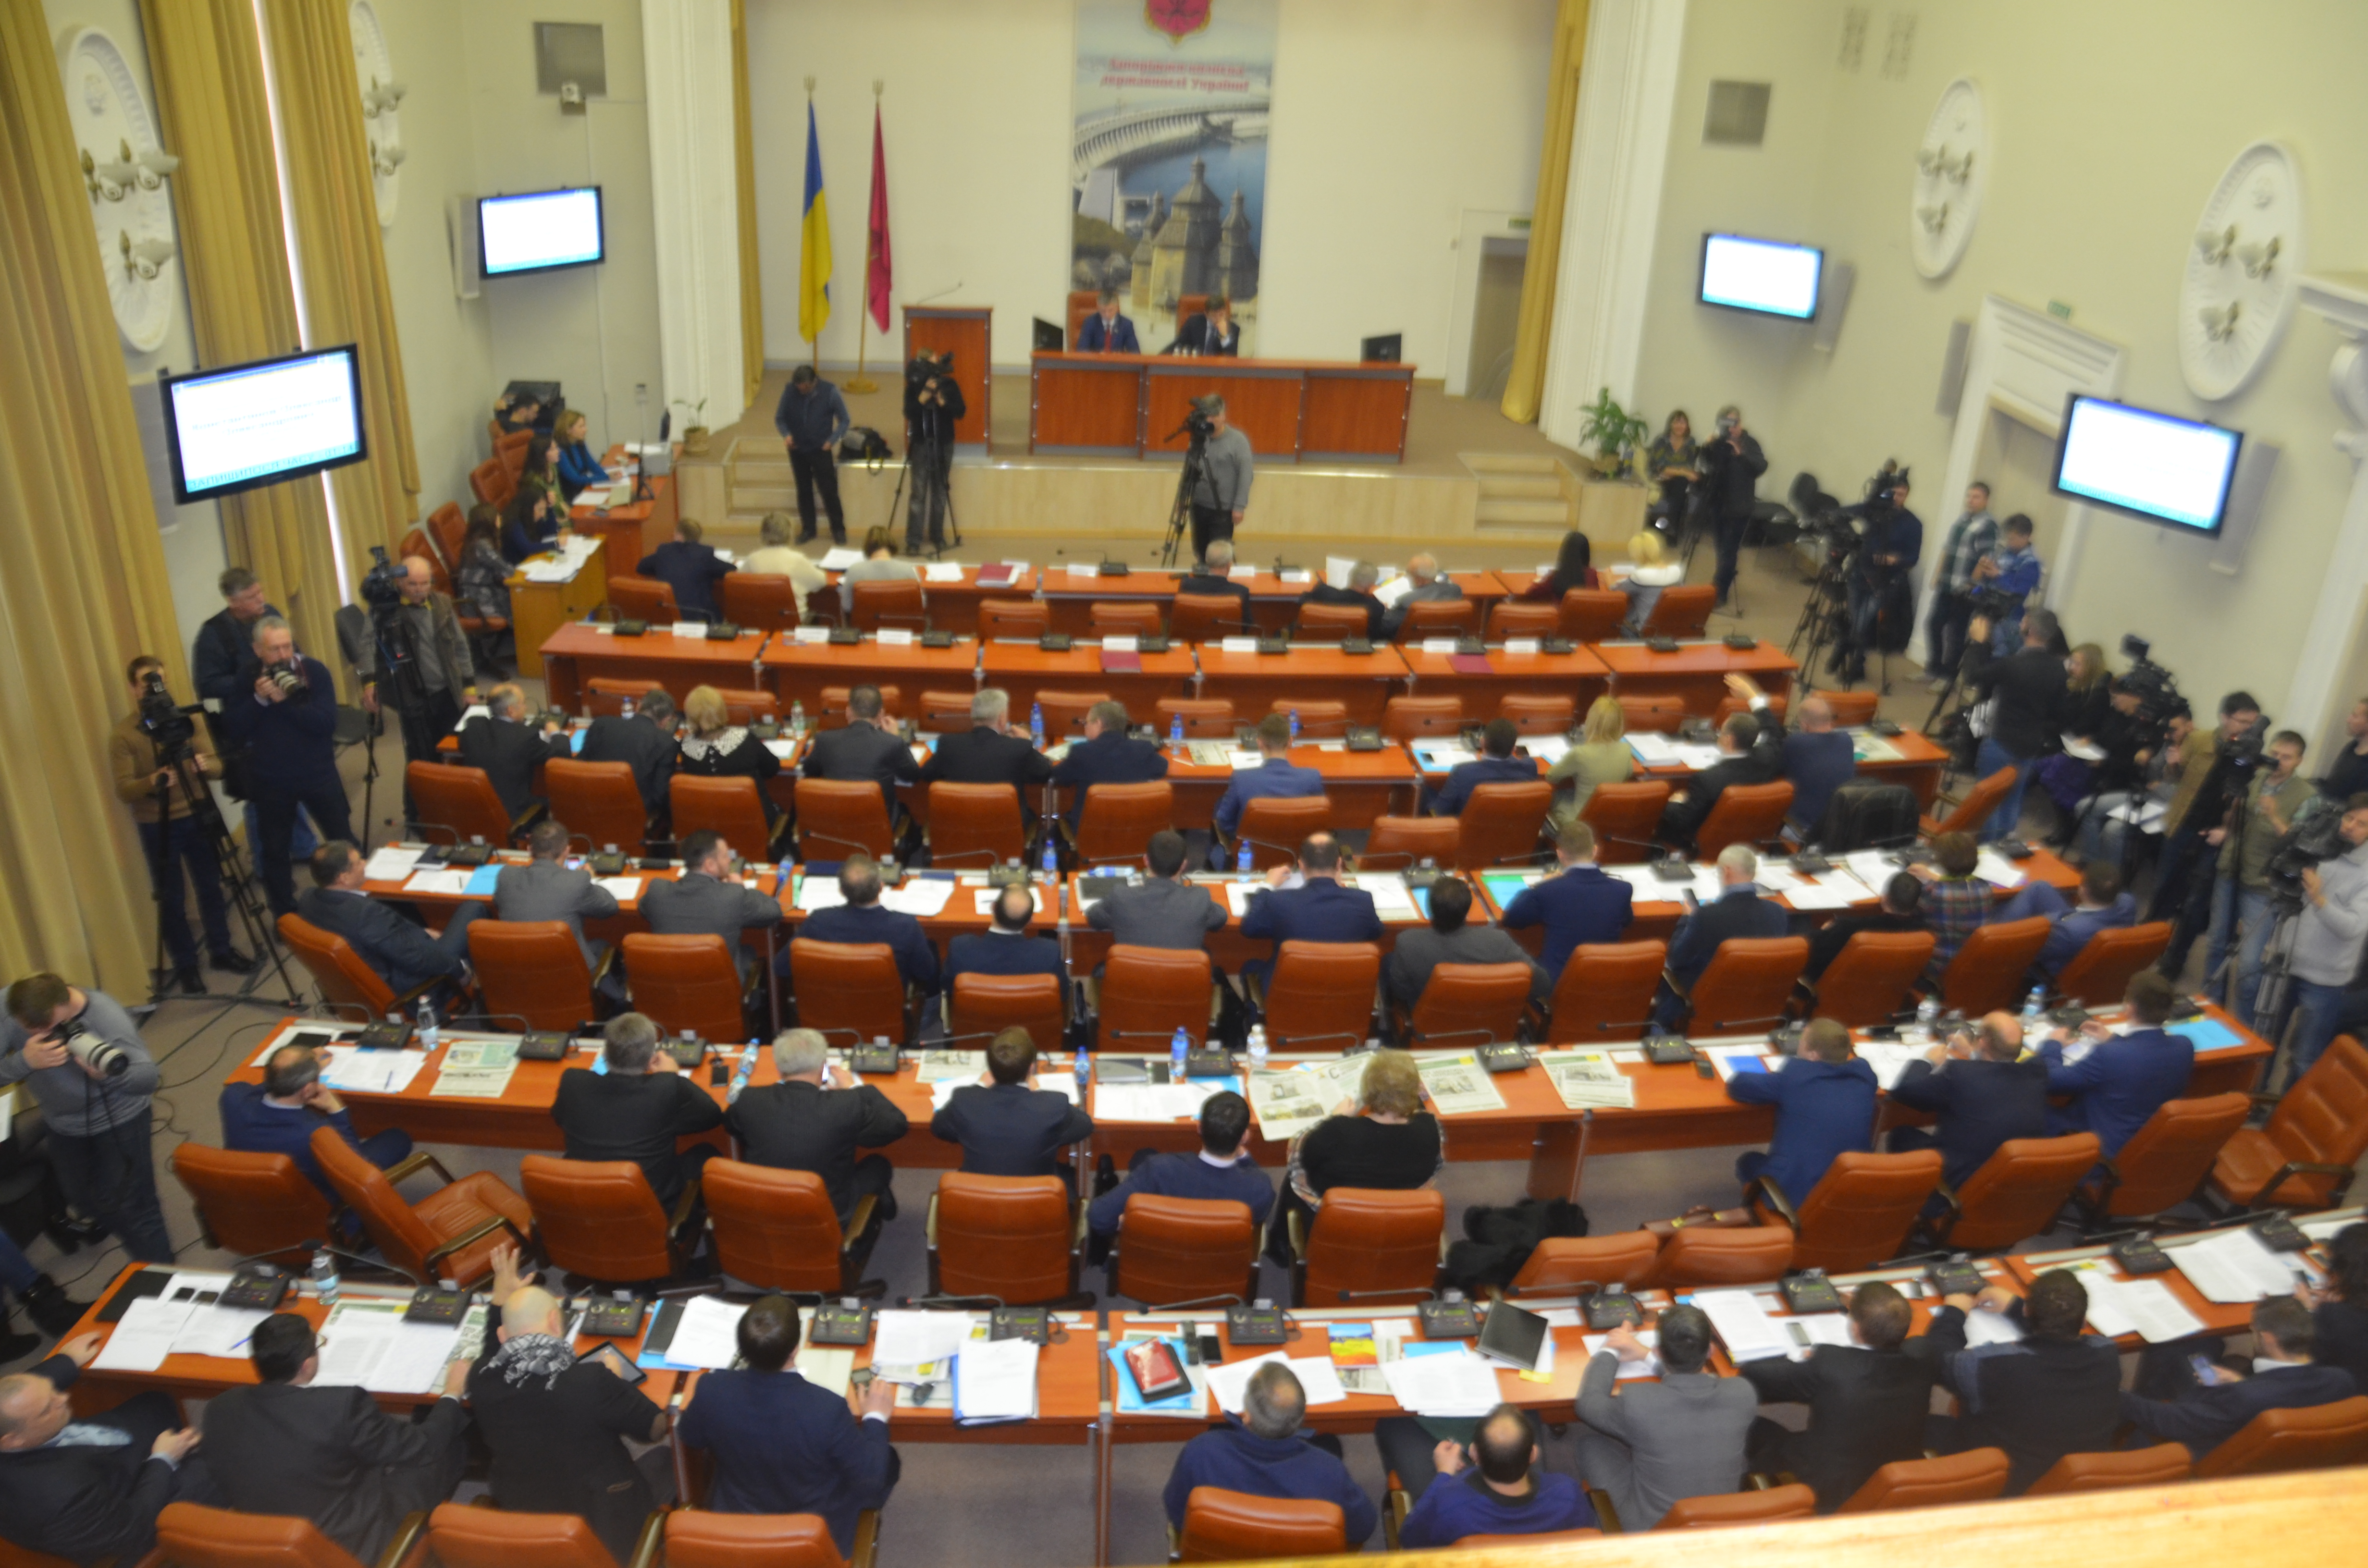 Четверо запорожских депутатов решили скрыть свои доходы от общественности и до сих пор не подали е-декларации